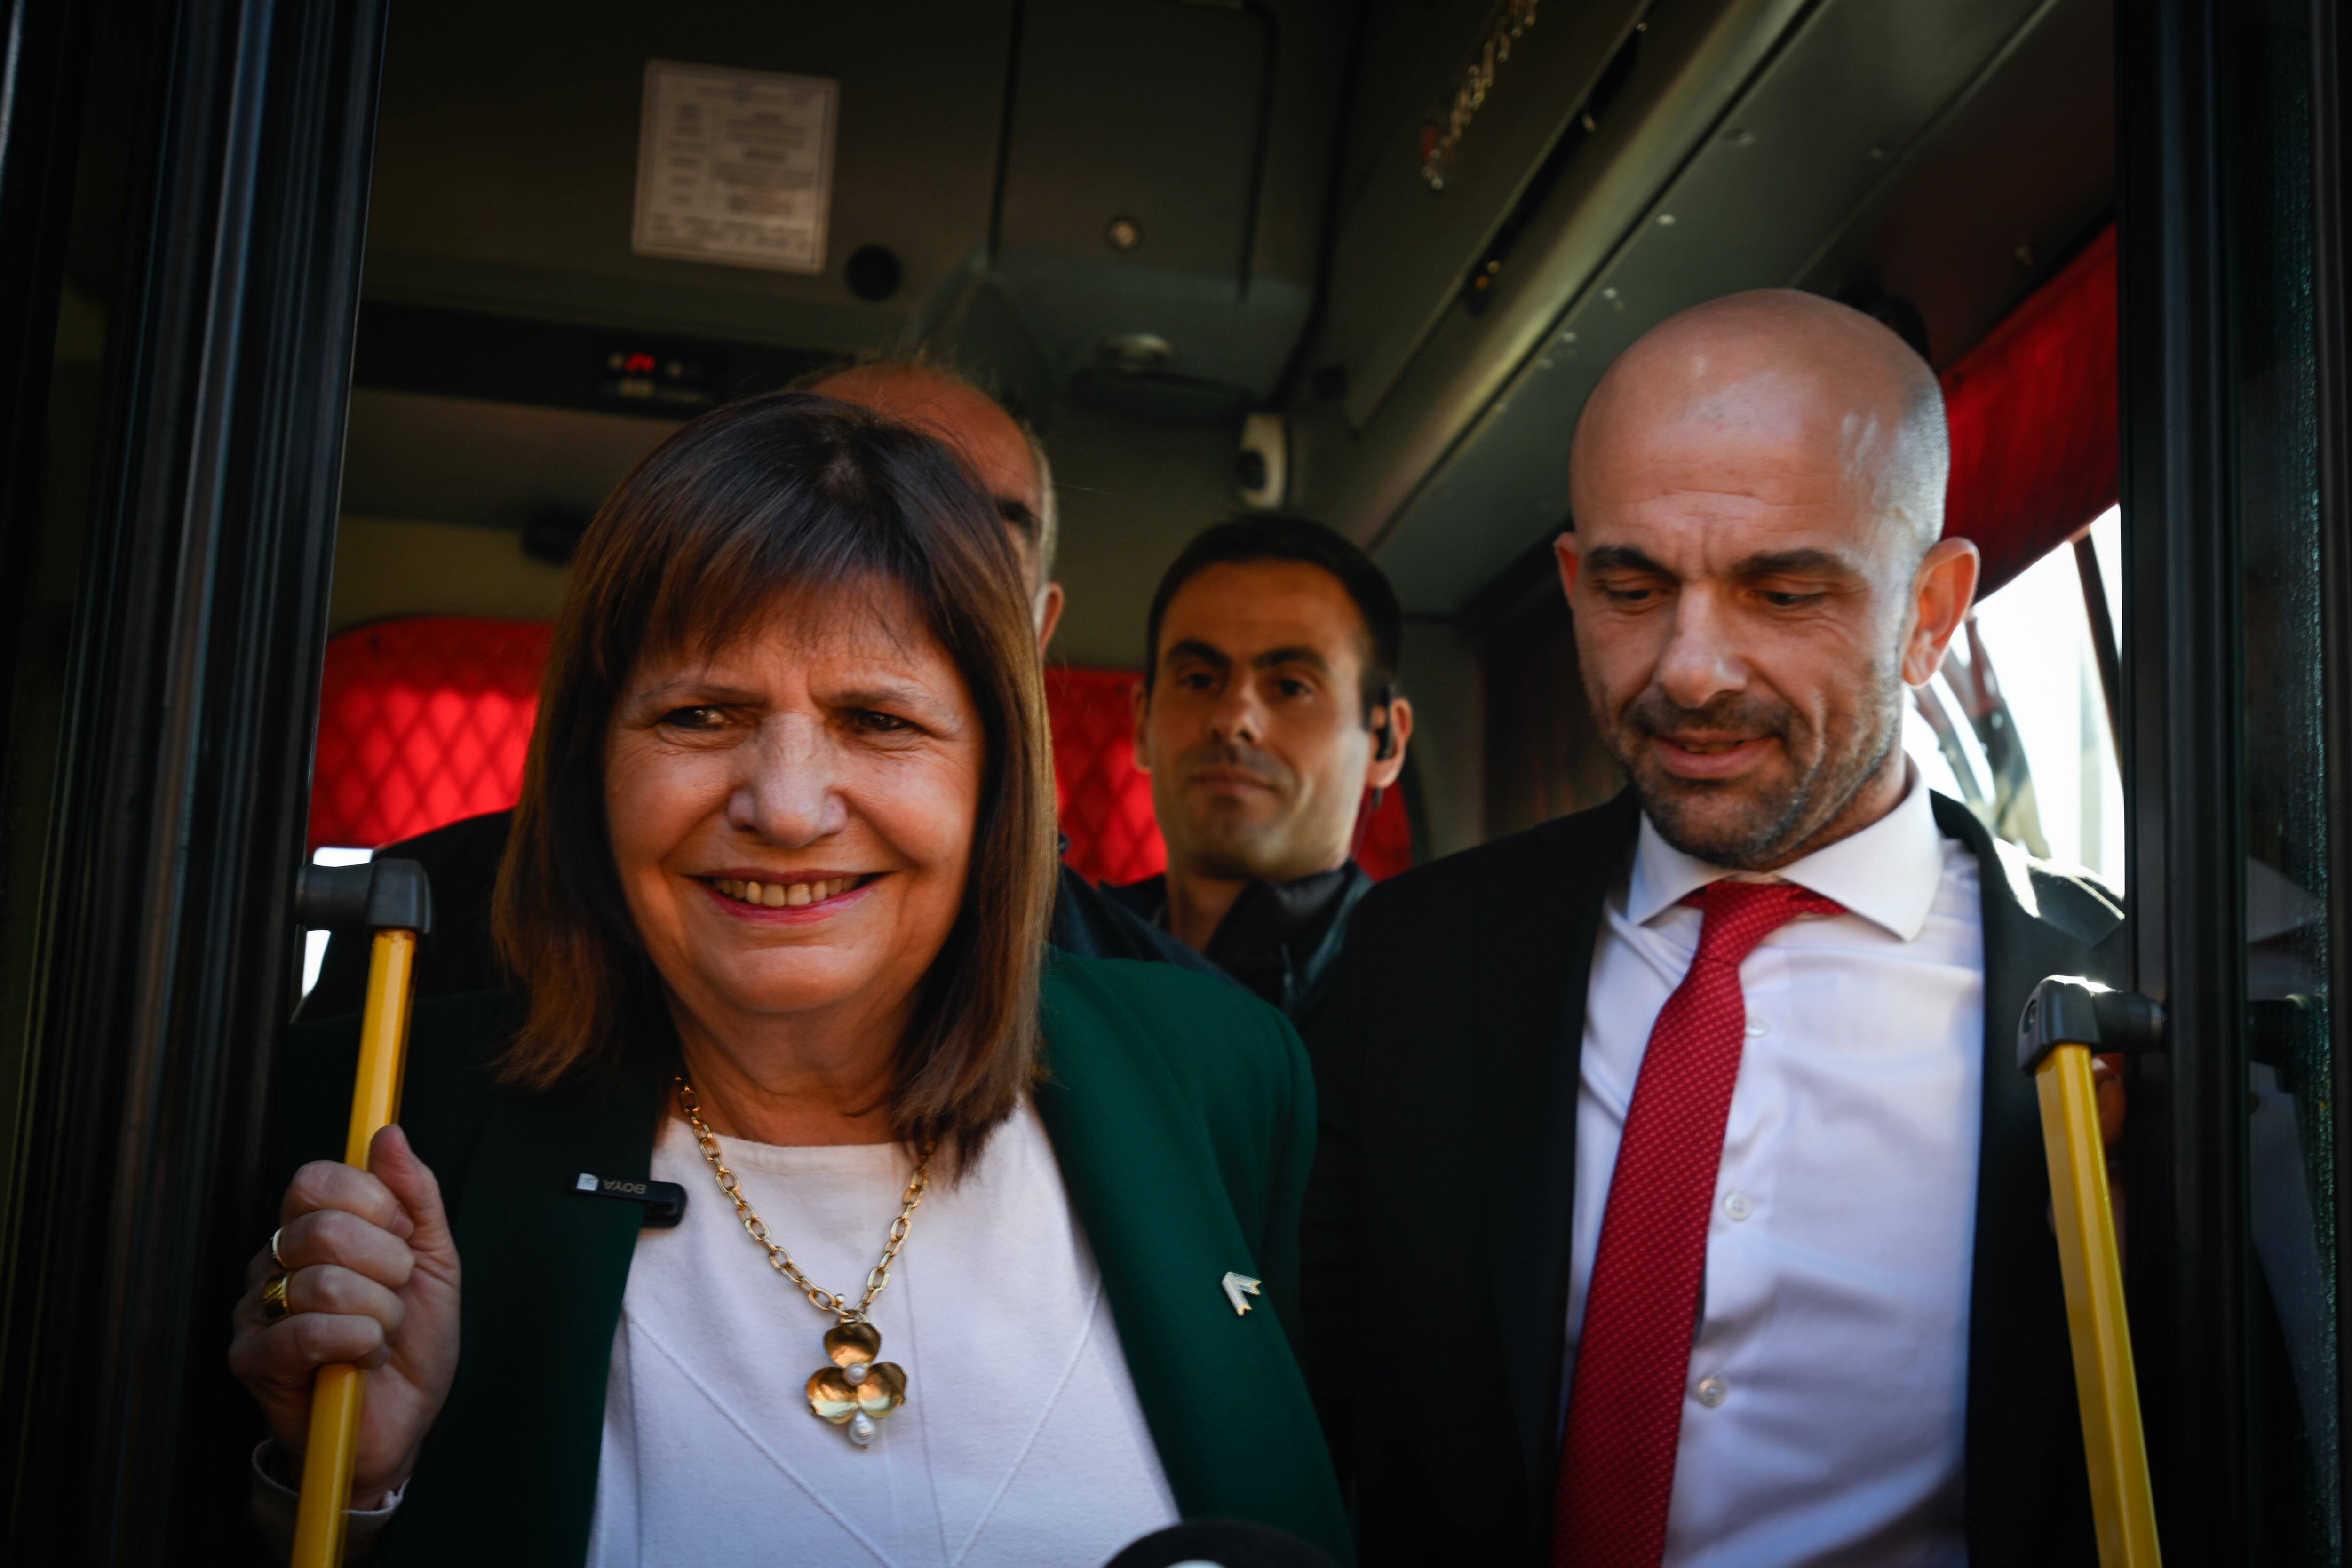 La ministra de Seguridad, Patricia Bullrich, y el secretario de Transporte, Franco Mogetta, se suben a un colectivo en la estación de trenes de Constitución.